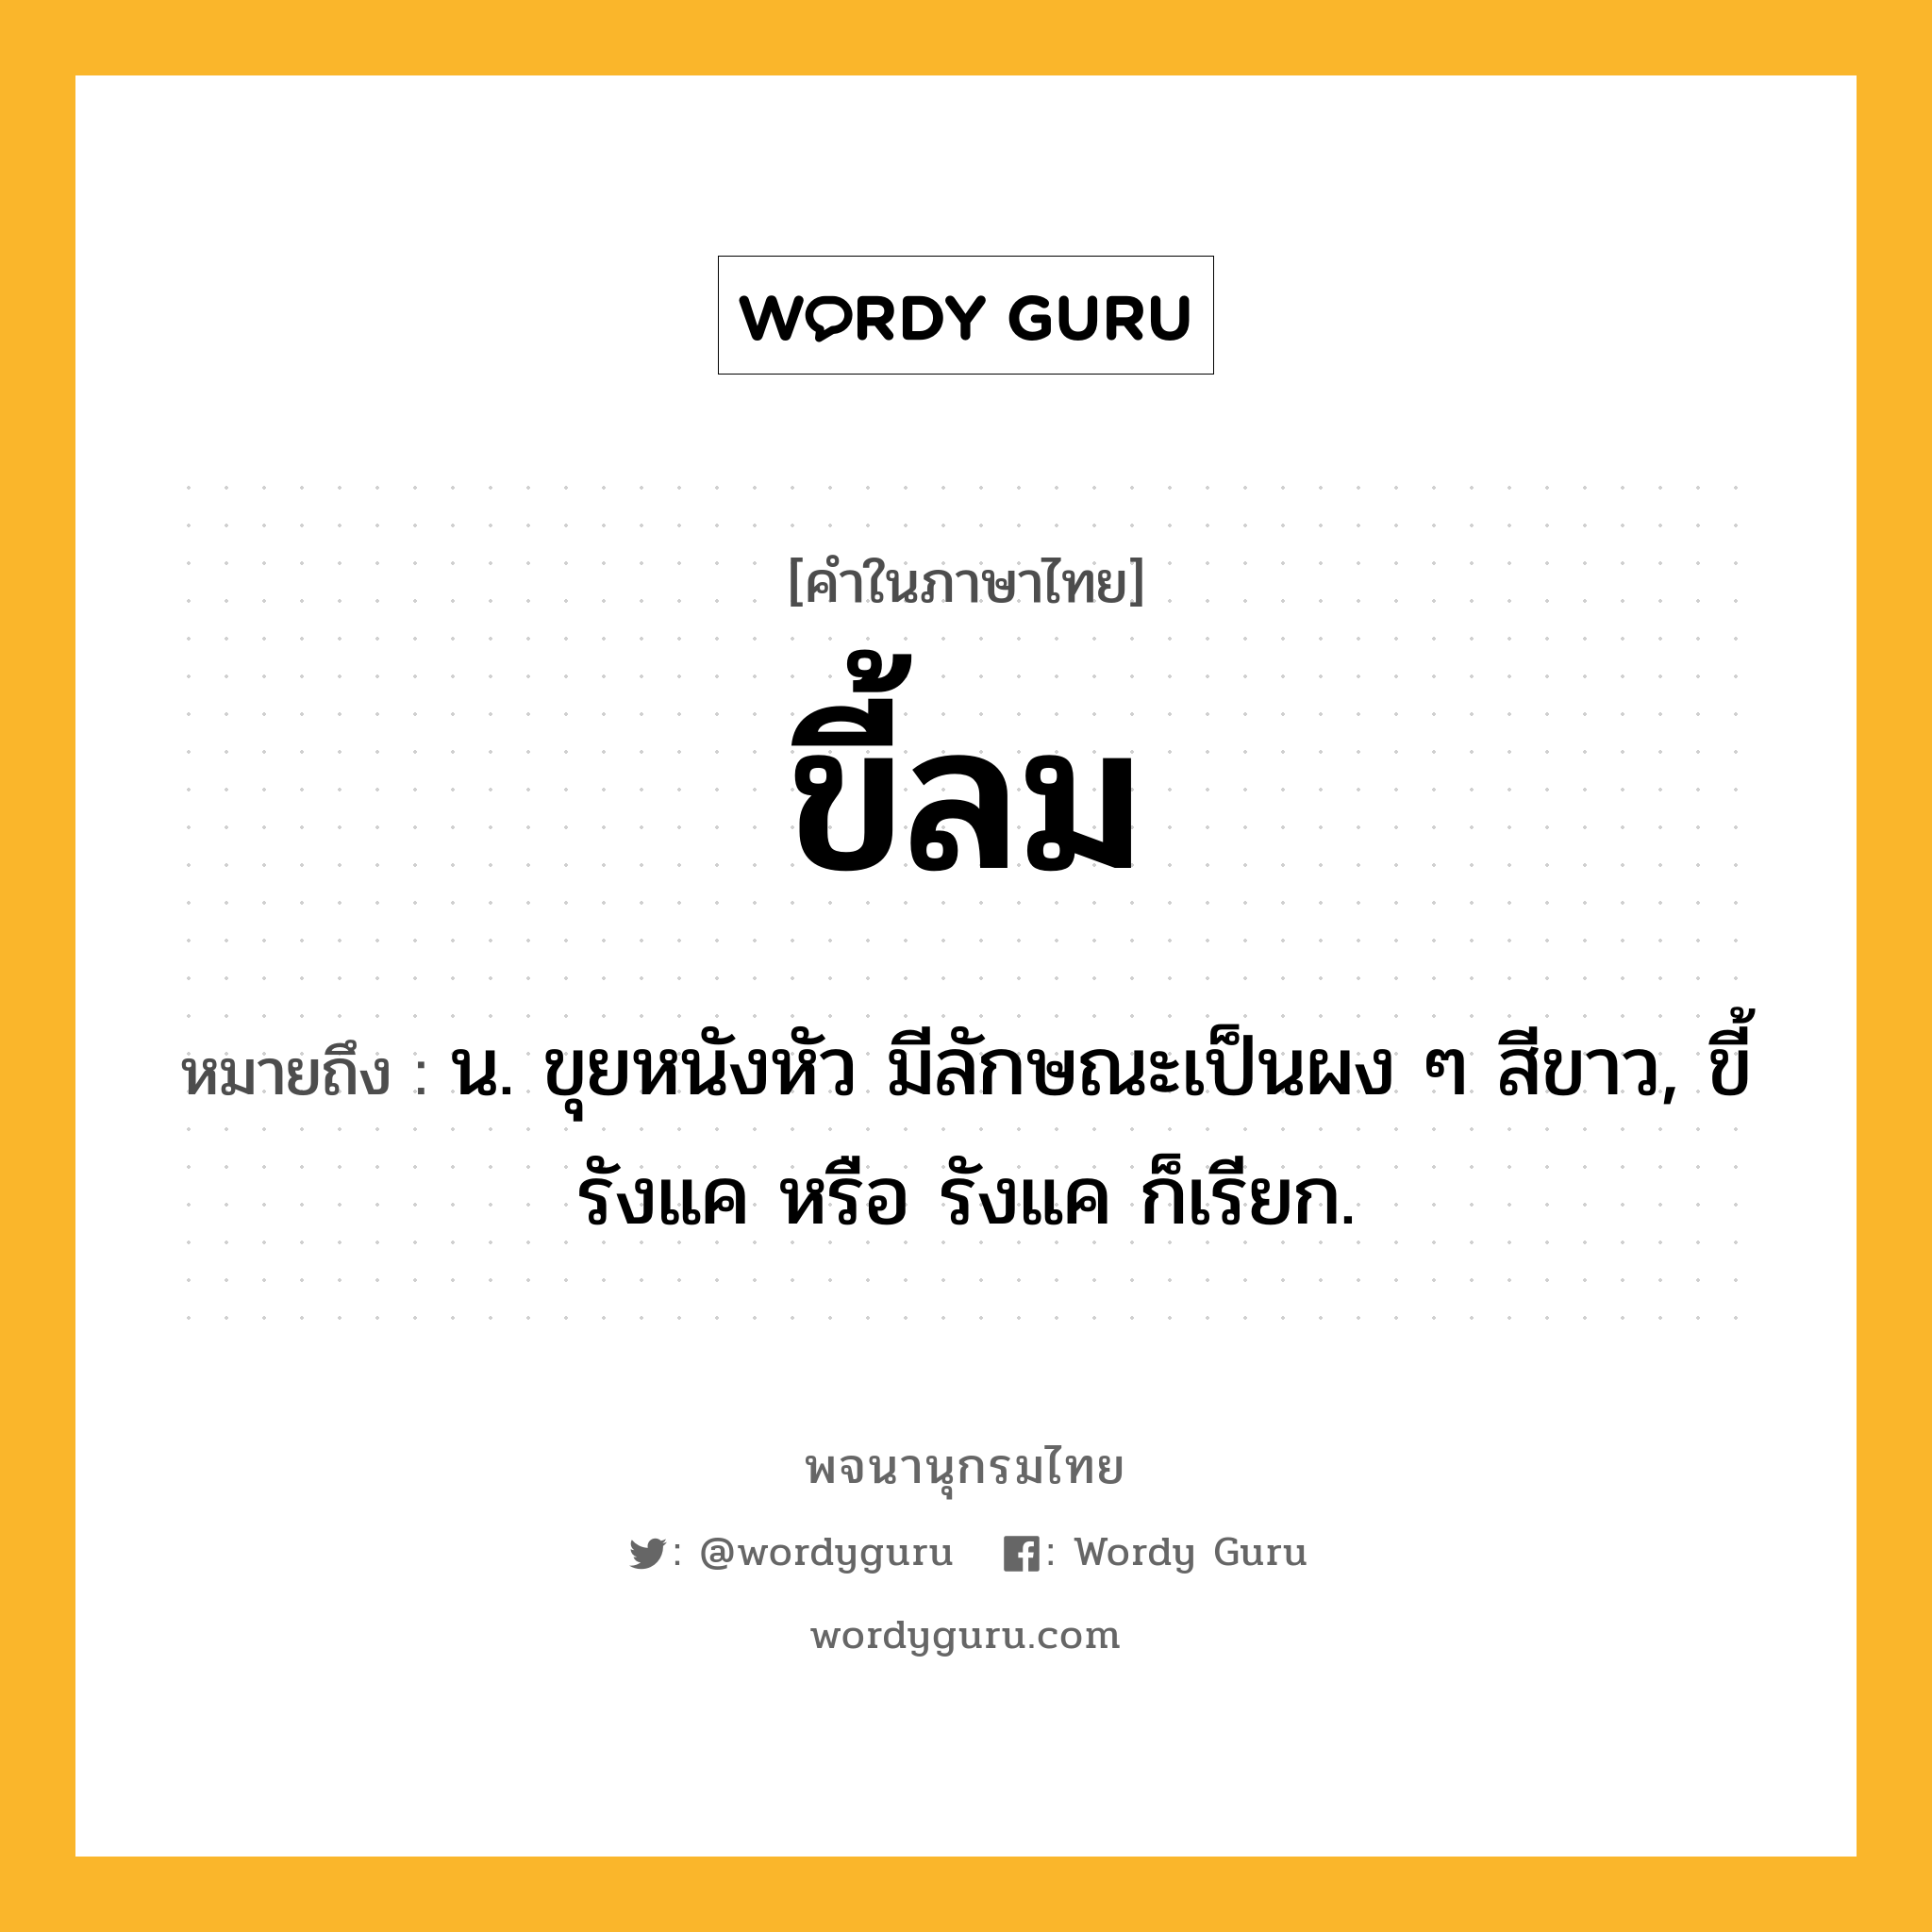 ขี้ลม ความหมาย หมายถึงอะไร?, คำในภาษาไทย ขี้ลม หมายถึง น. ขุยหนังหัว มีลักษณะเป็นผง ๆ สีขาว, ขี้รังแค หรือ รังแค ก็เรียก.